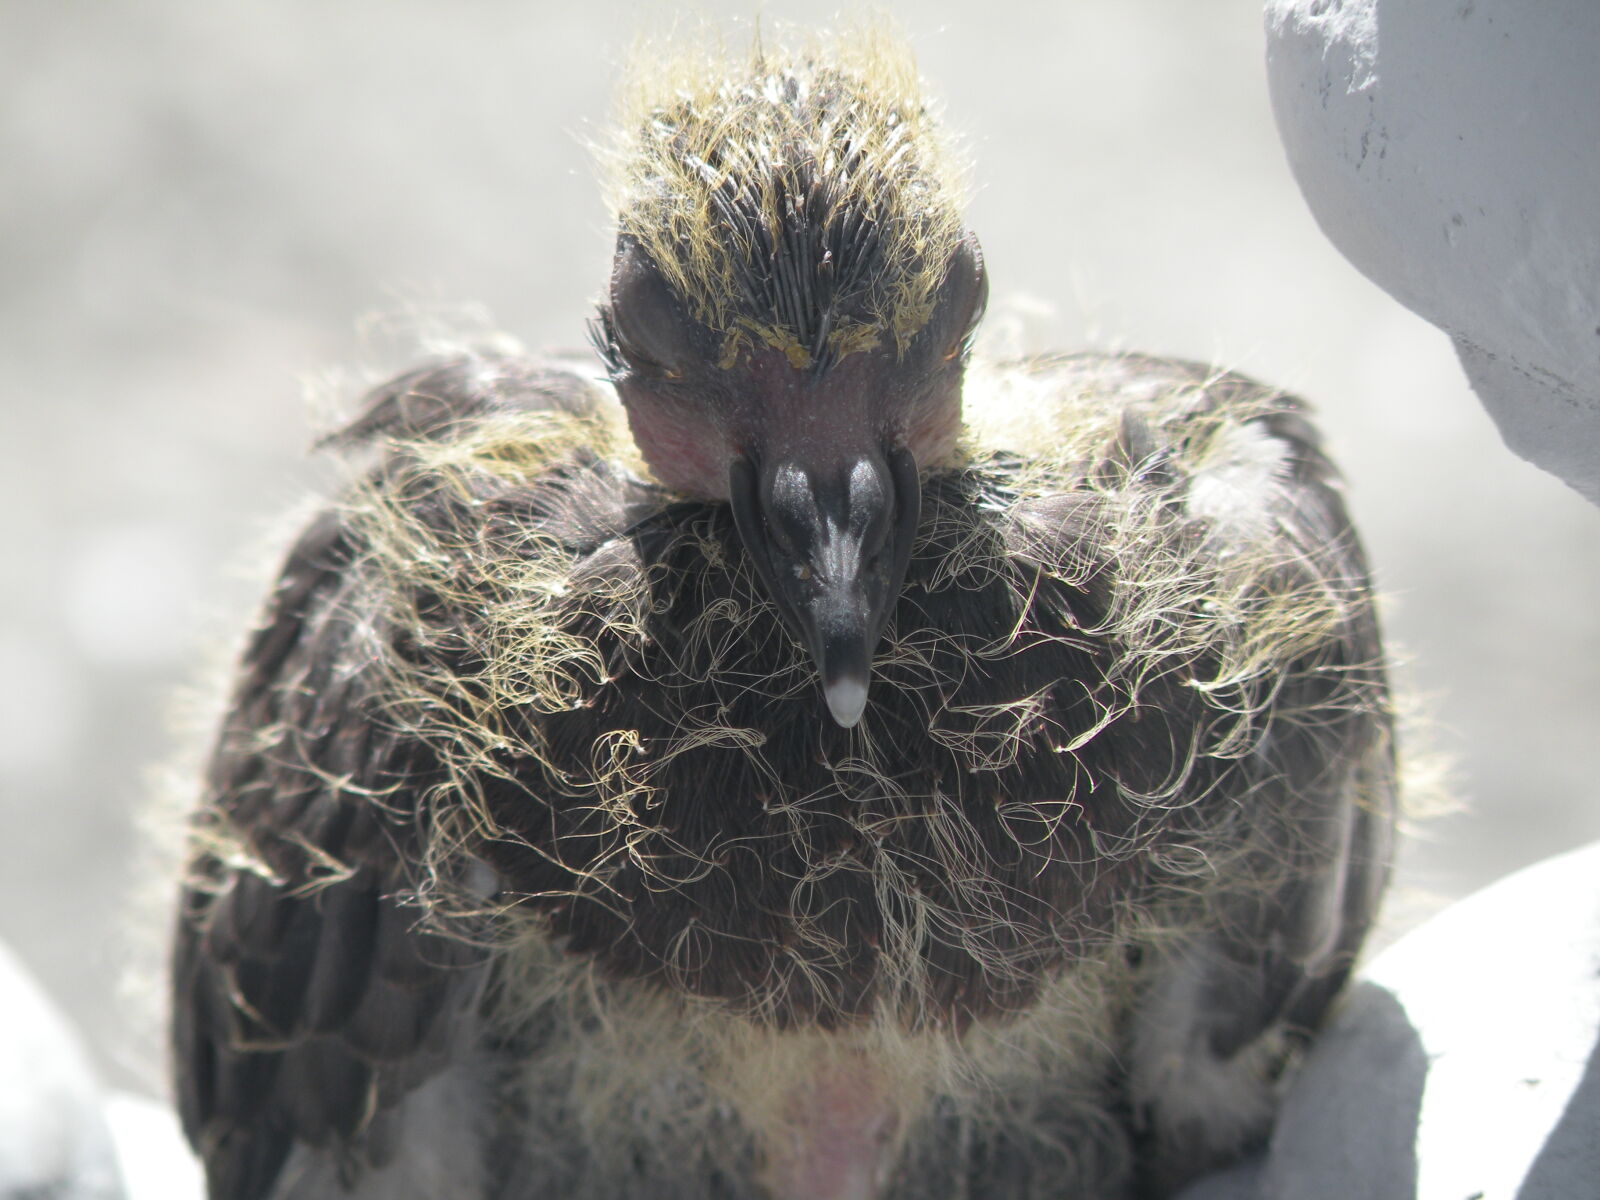 Nikon Coolpix P80 sample photo. Bird, close, up, pigeon photography